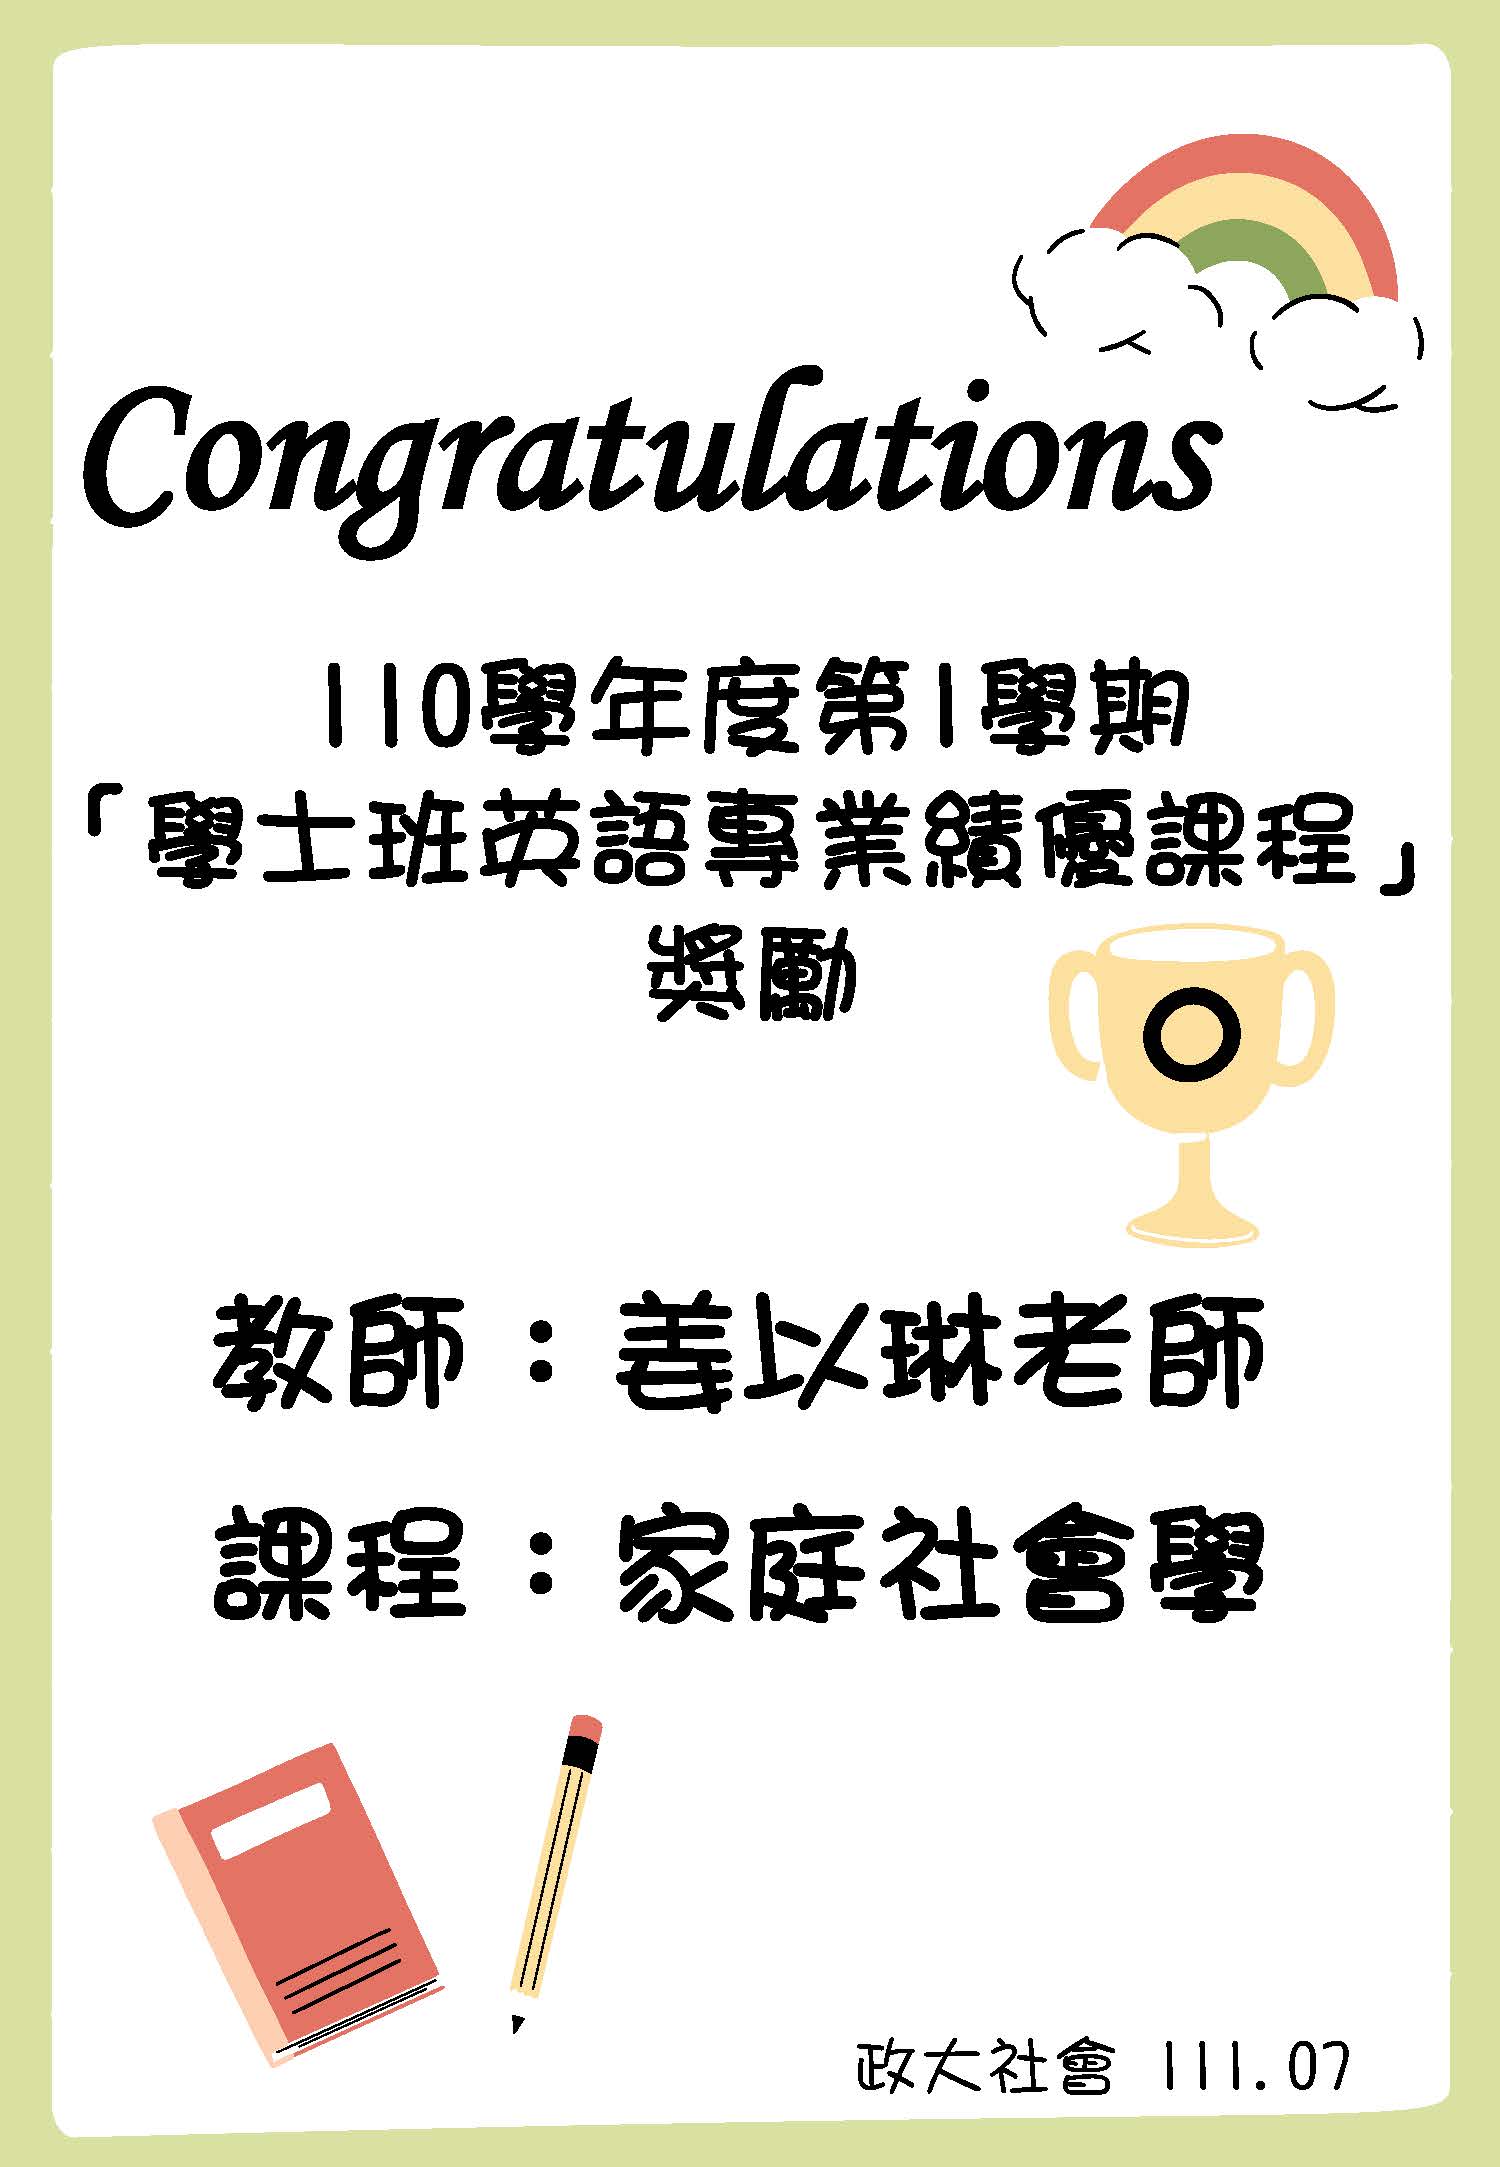 賀 本系教師姜以琳榮獲「110學年度第1學期學士班英語專業績優課程獎勵」